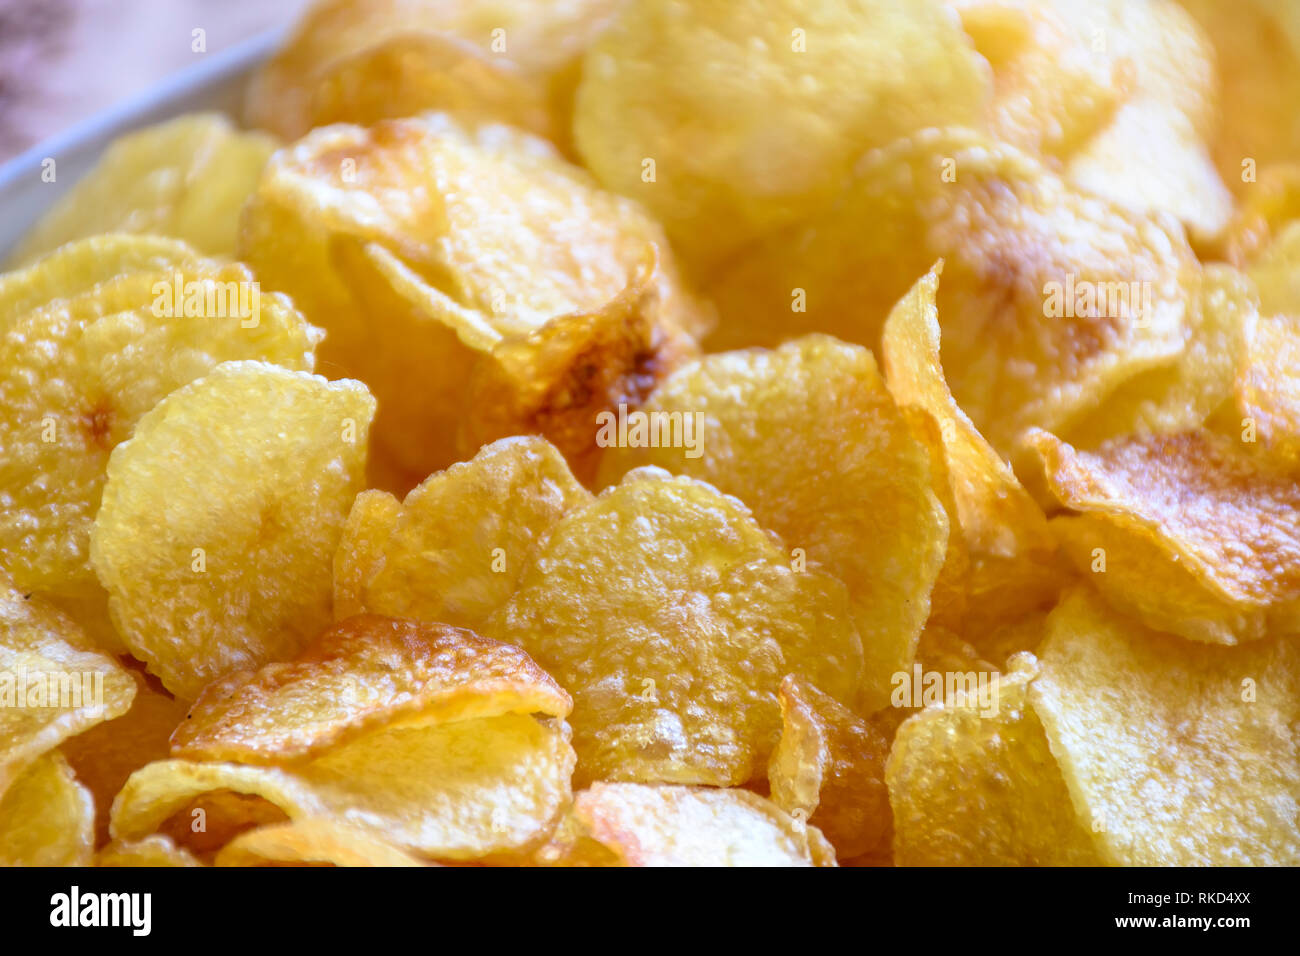 Nahaufnahme der Platte mit mehreren Chips Kartoffeln bereit, um bedient zu werden Stockfoto